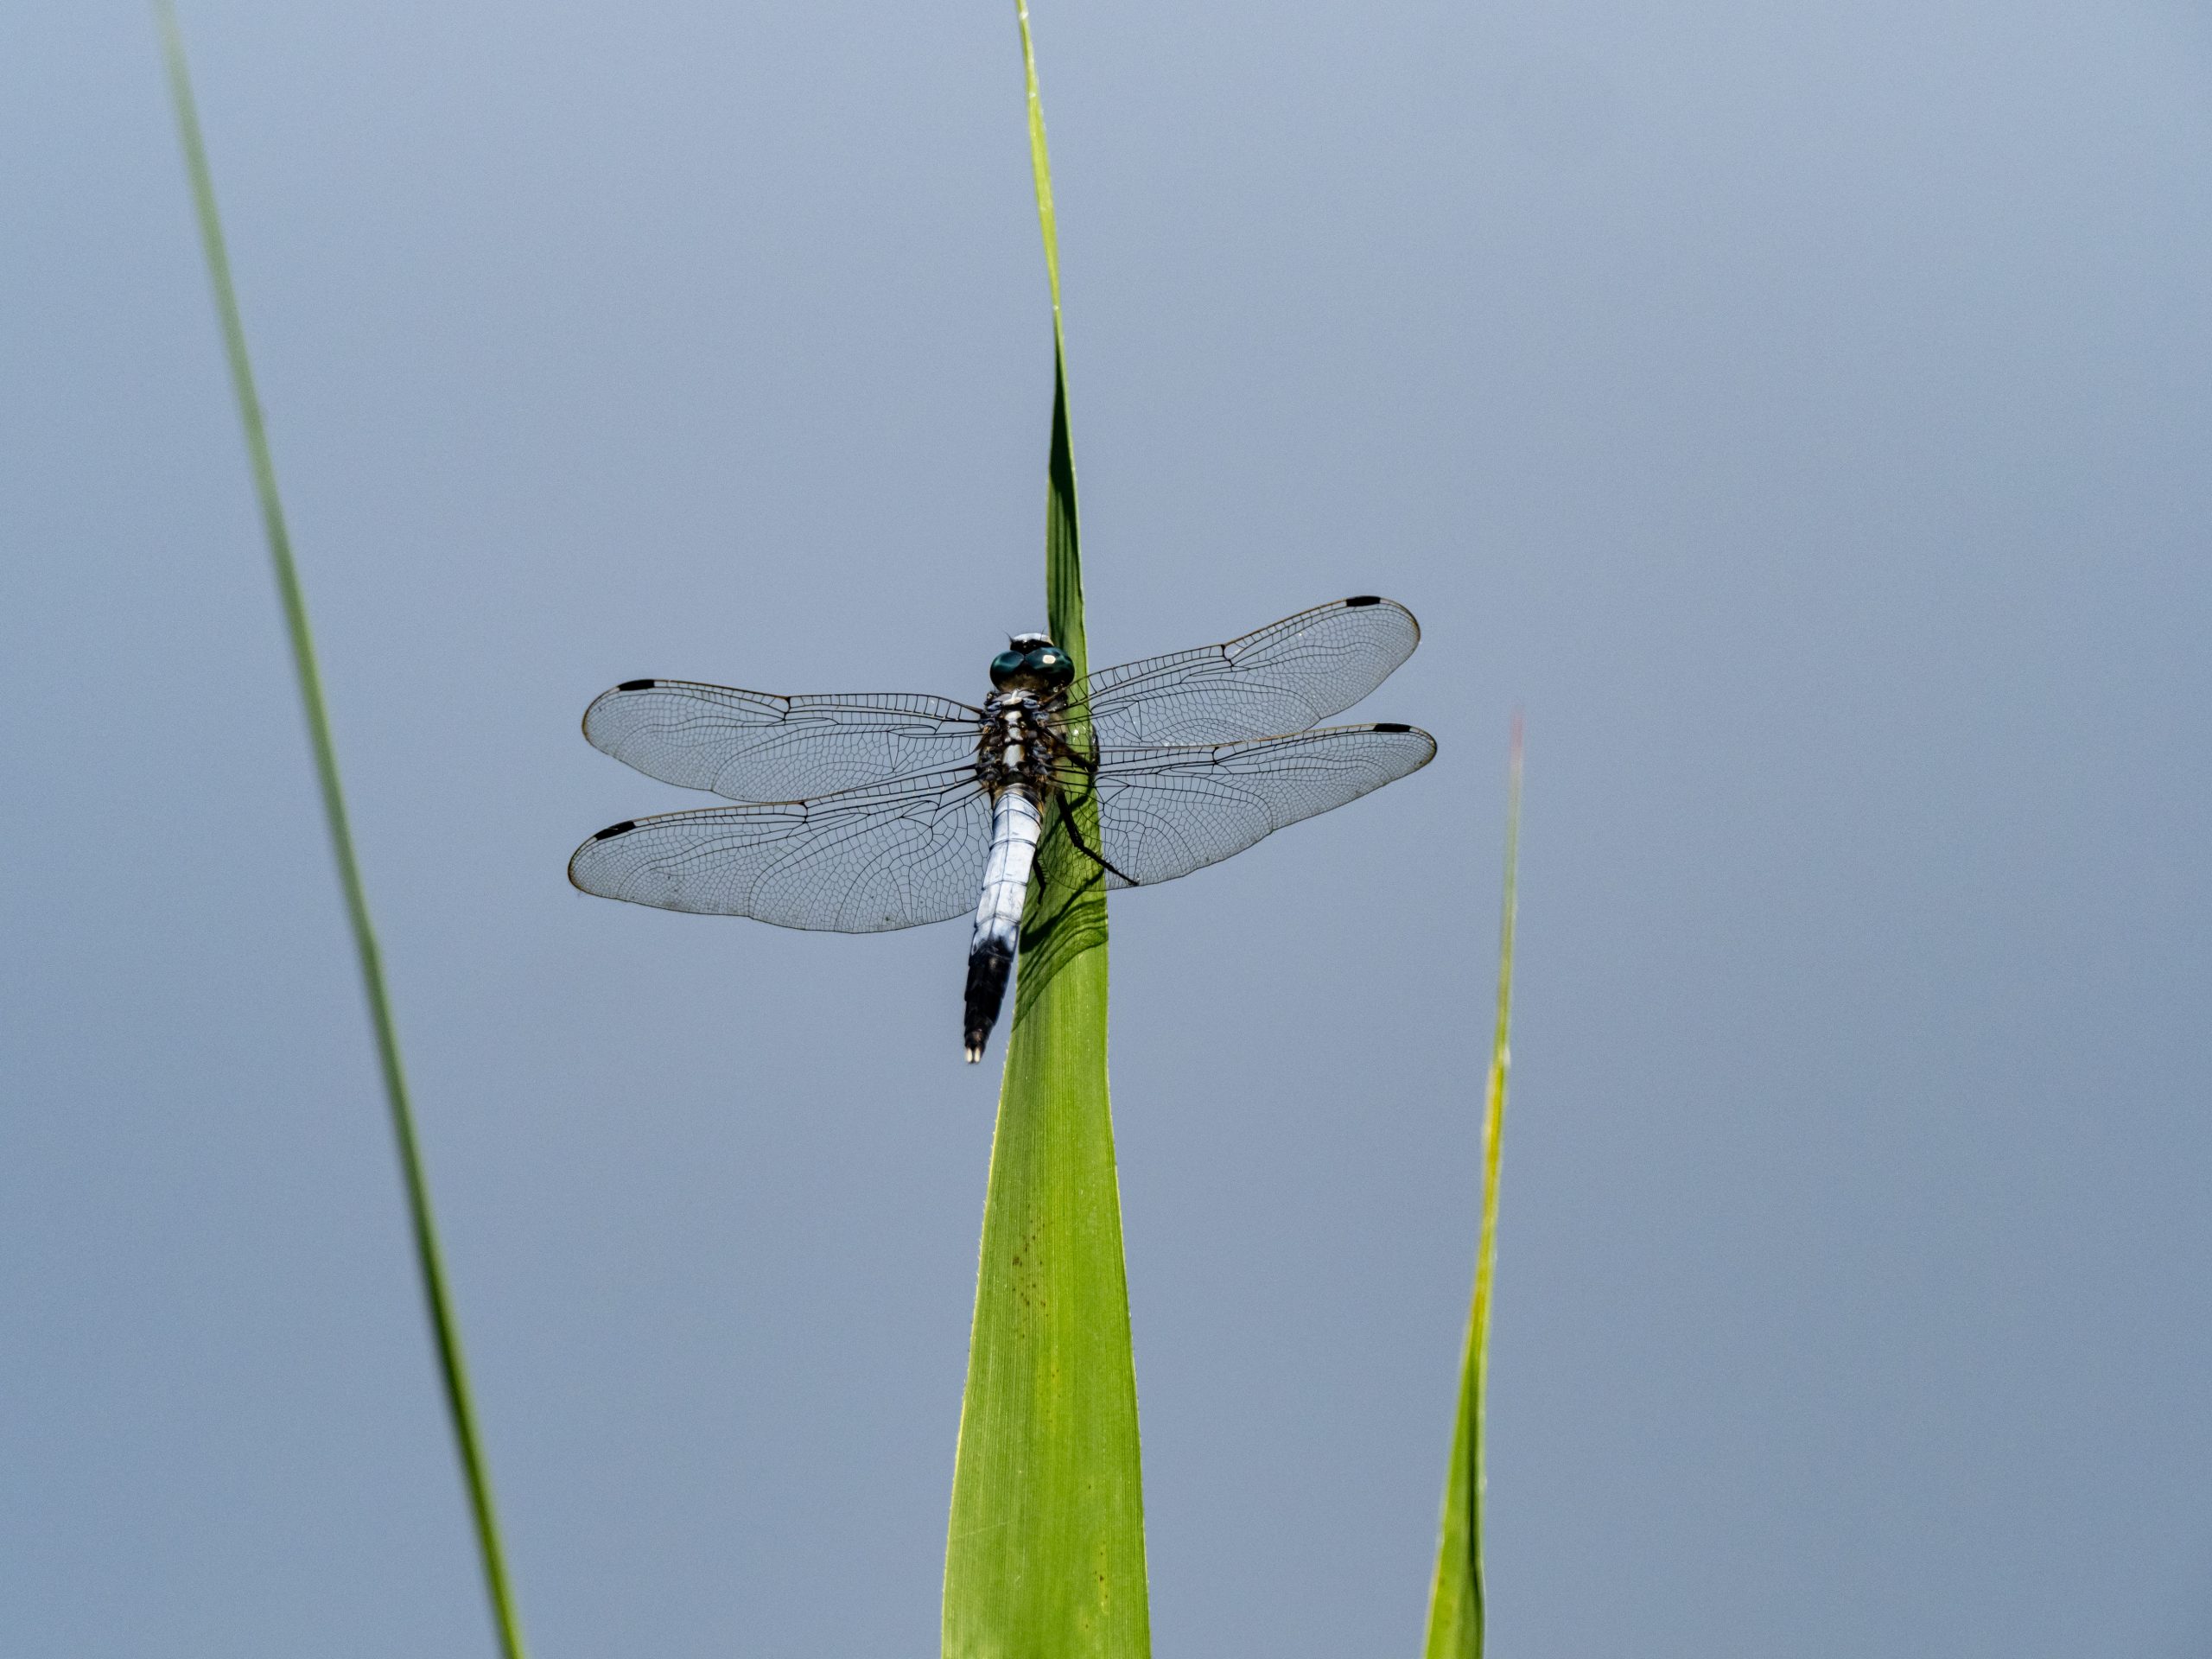 Les libellules mâles développent des couches de cire pour s’adapter au réchauffement climatique - Image